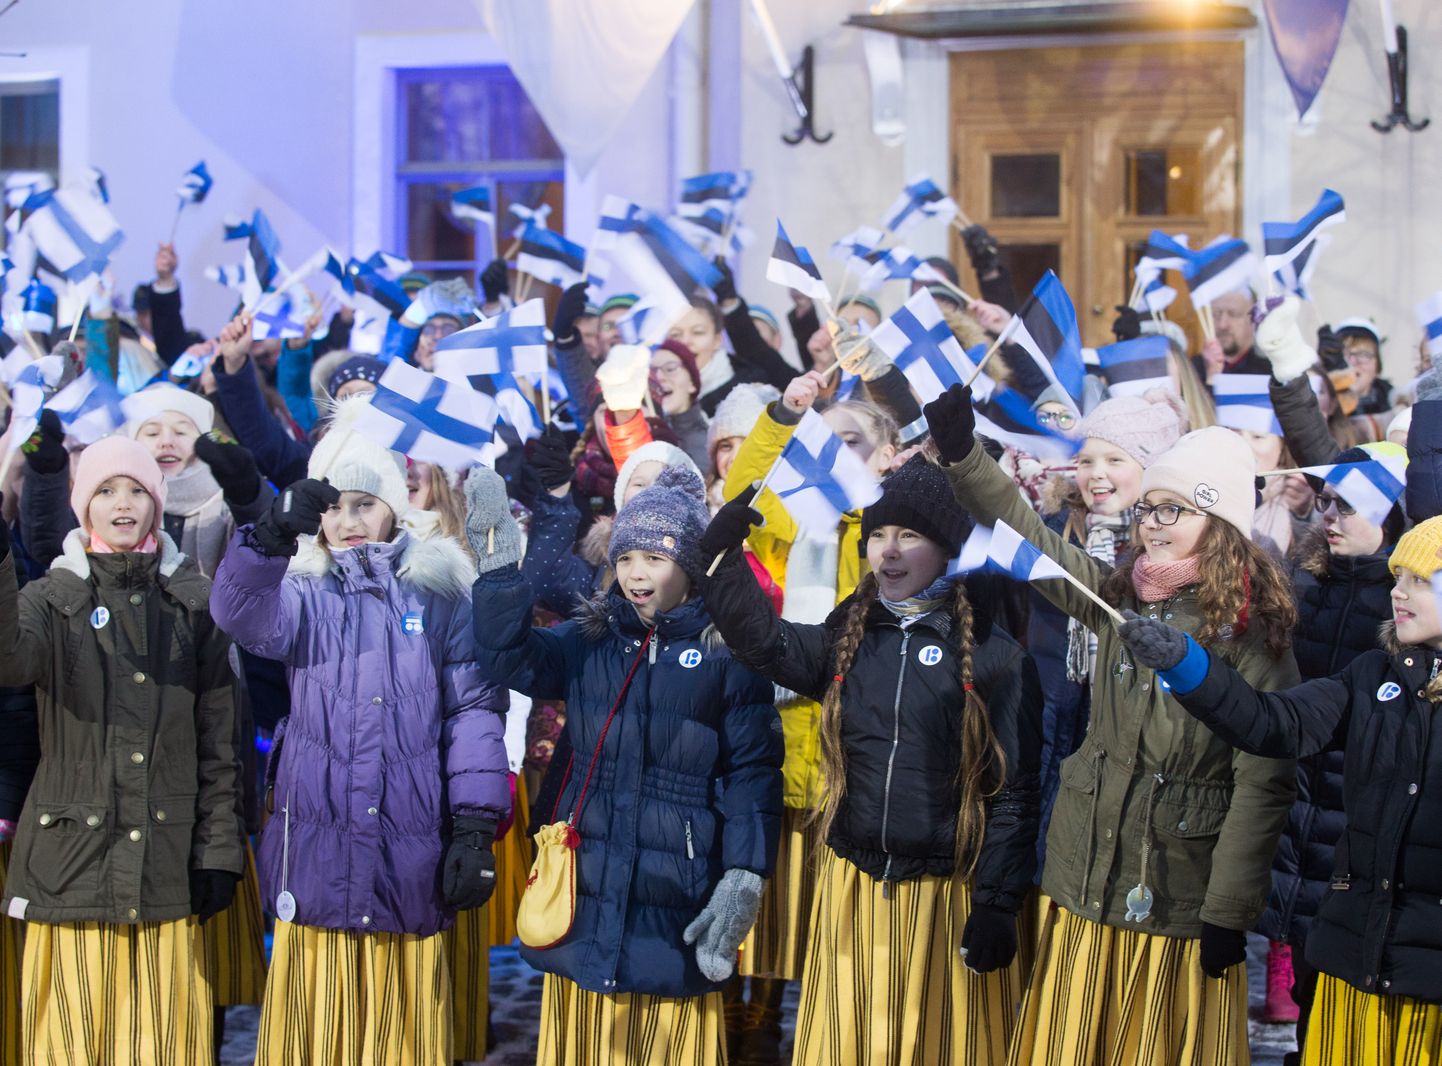 Soome 100. sünnipäeva tähistasid eestlased piduliku ühislaulmisega, meie juubeliks koguvad soomlased tervitusi.